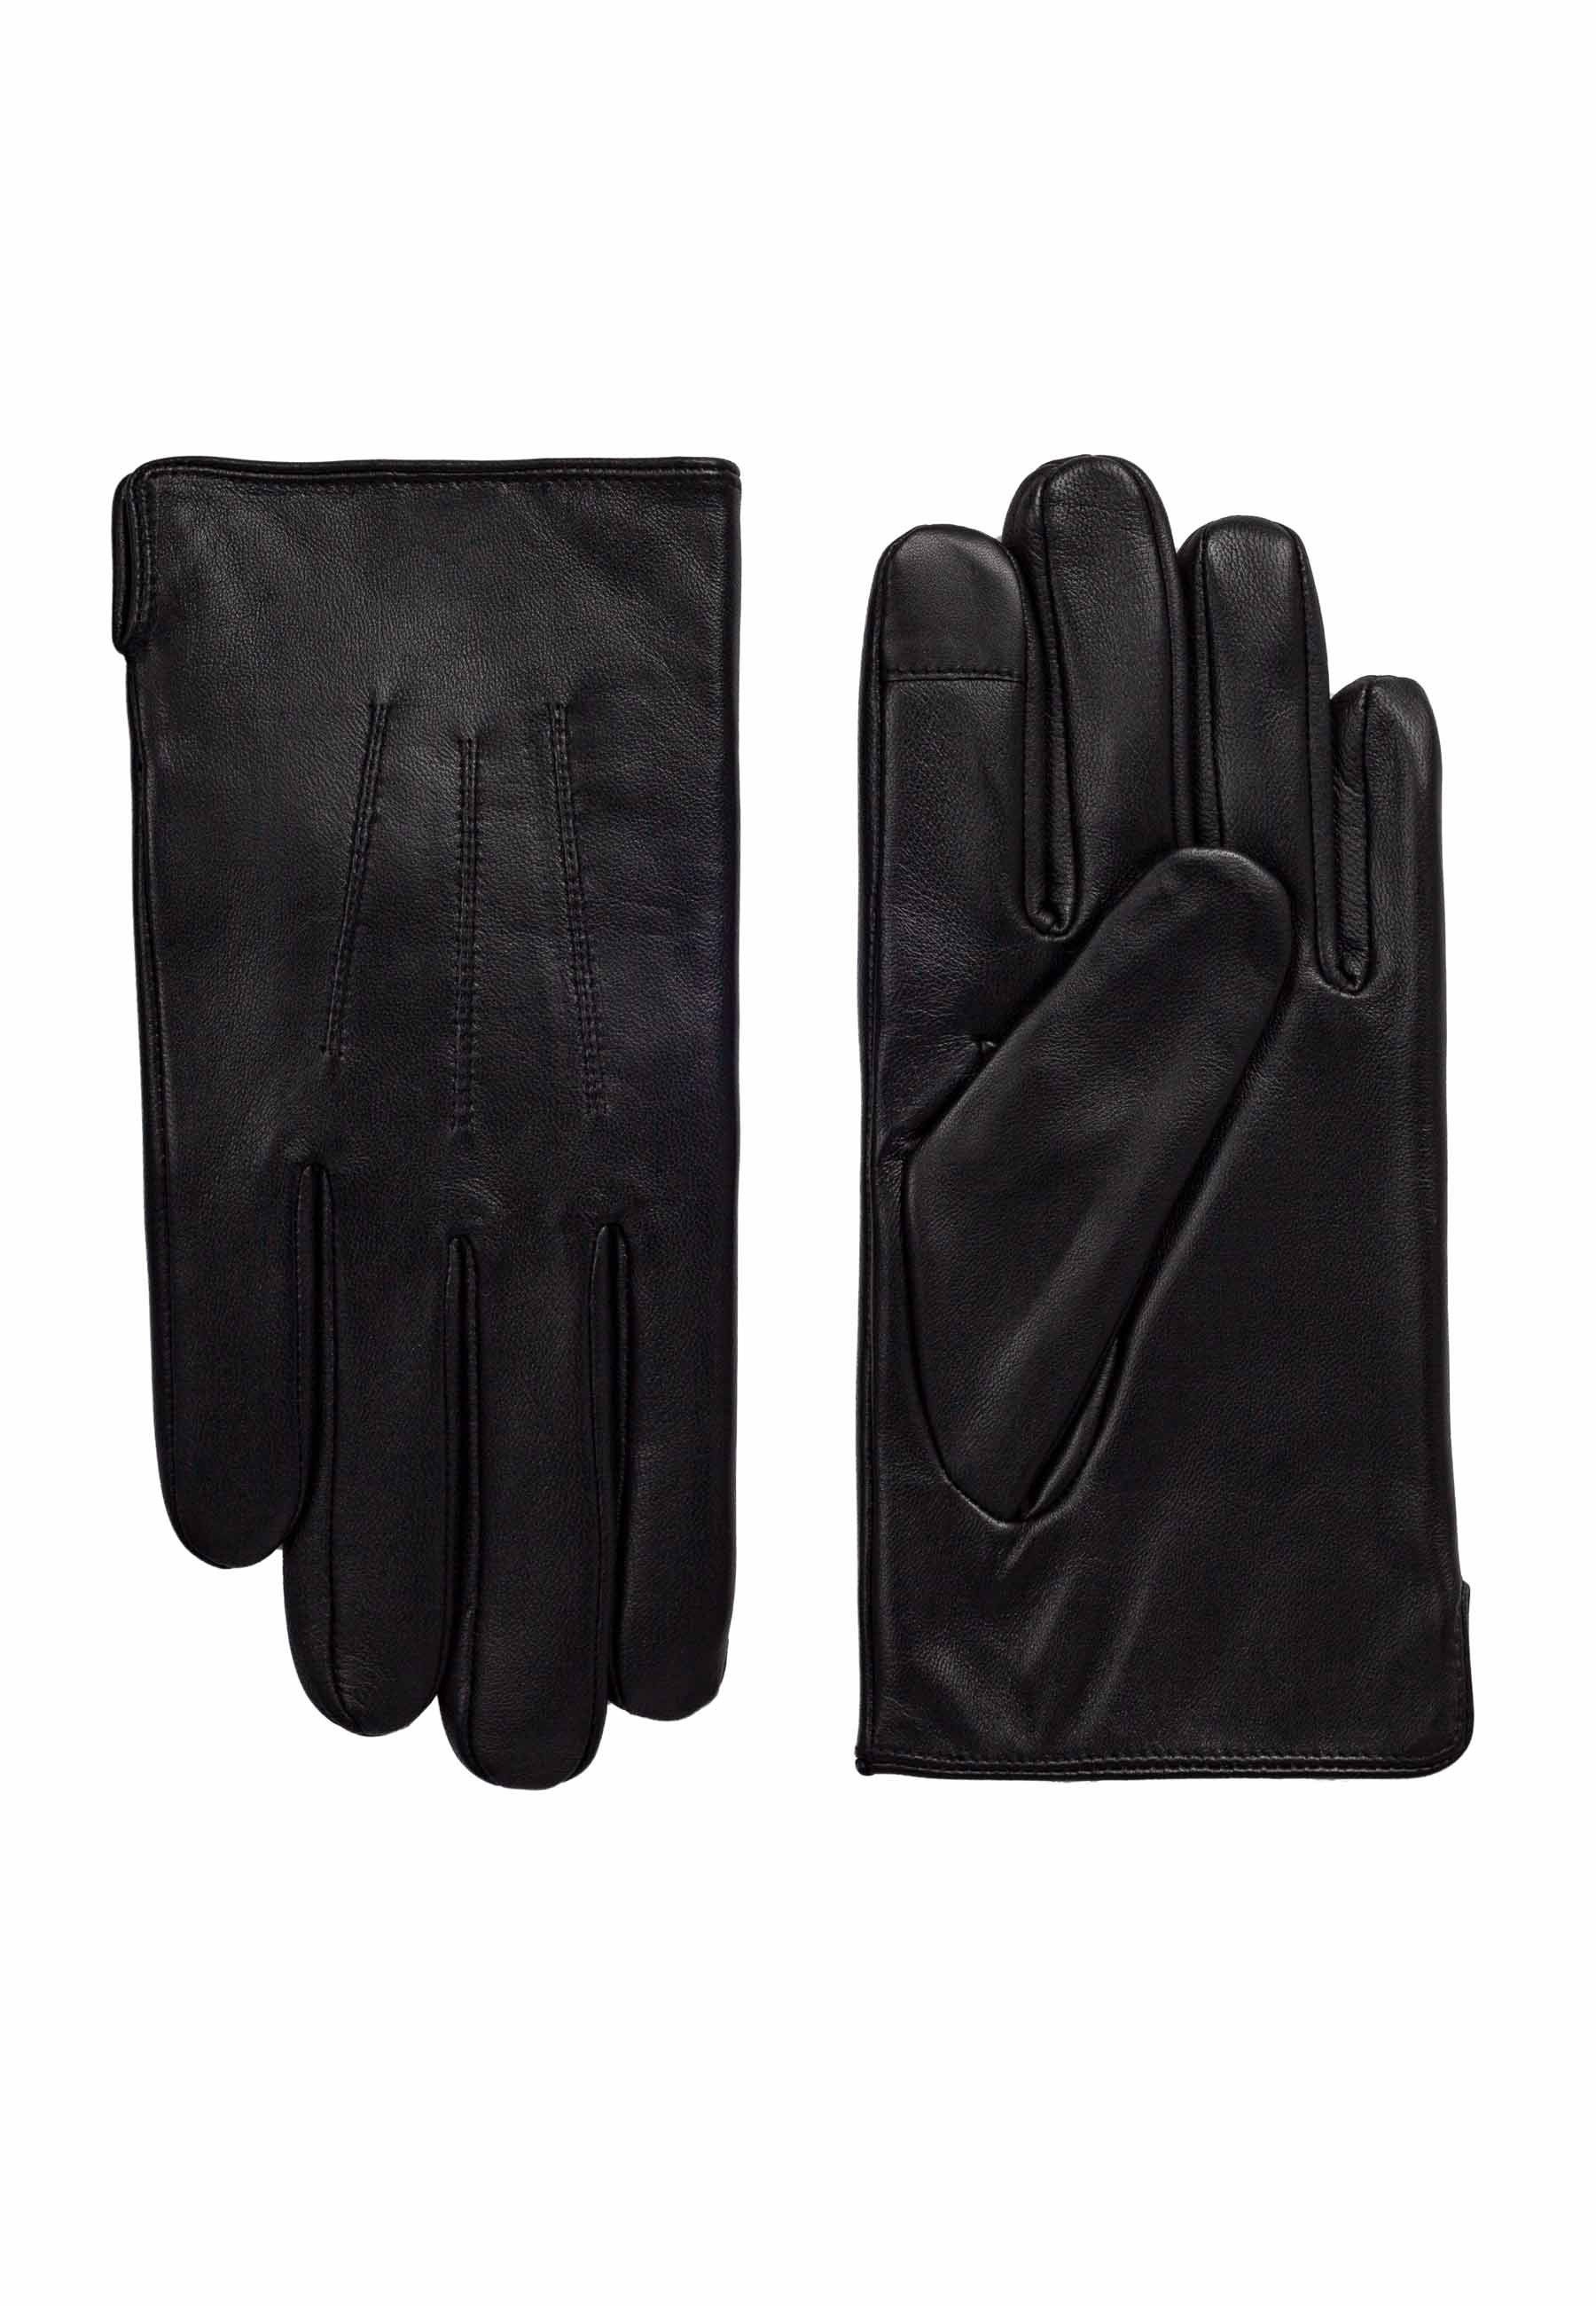 ok Lederhandschuhe Gloves Herrenhandschuh black 001 Matt